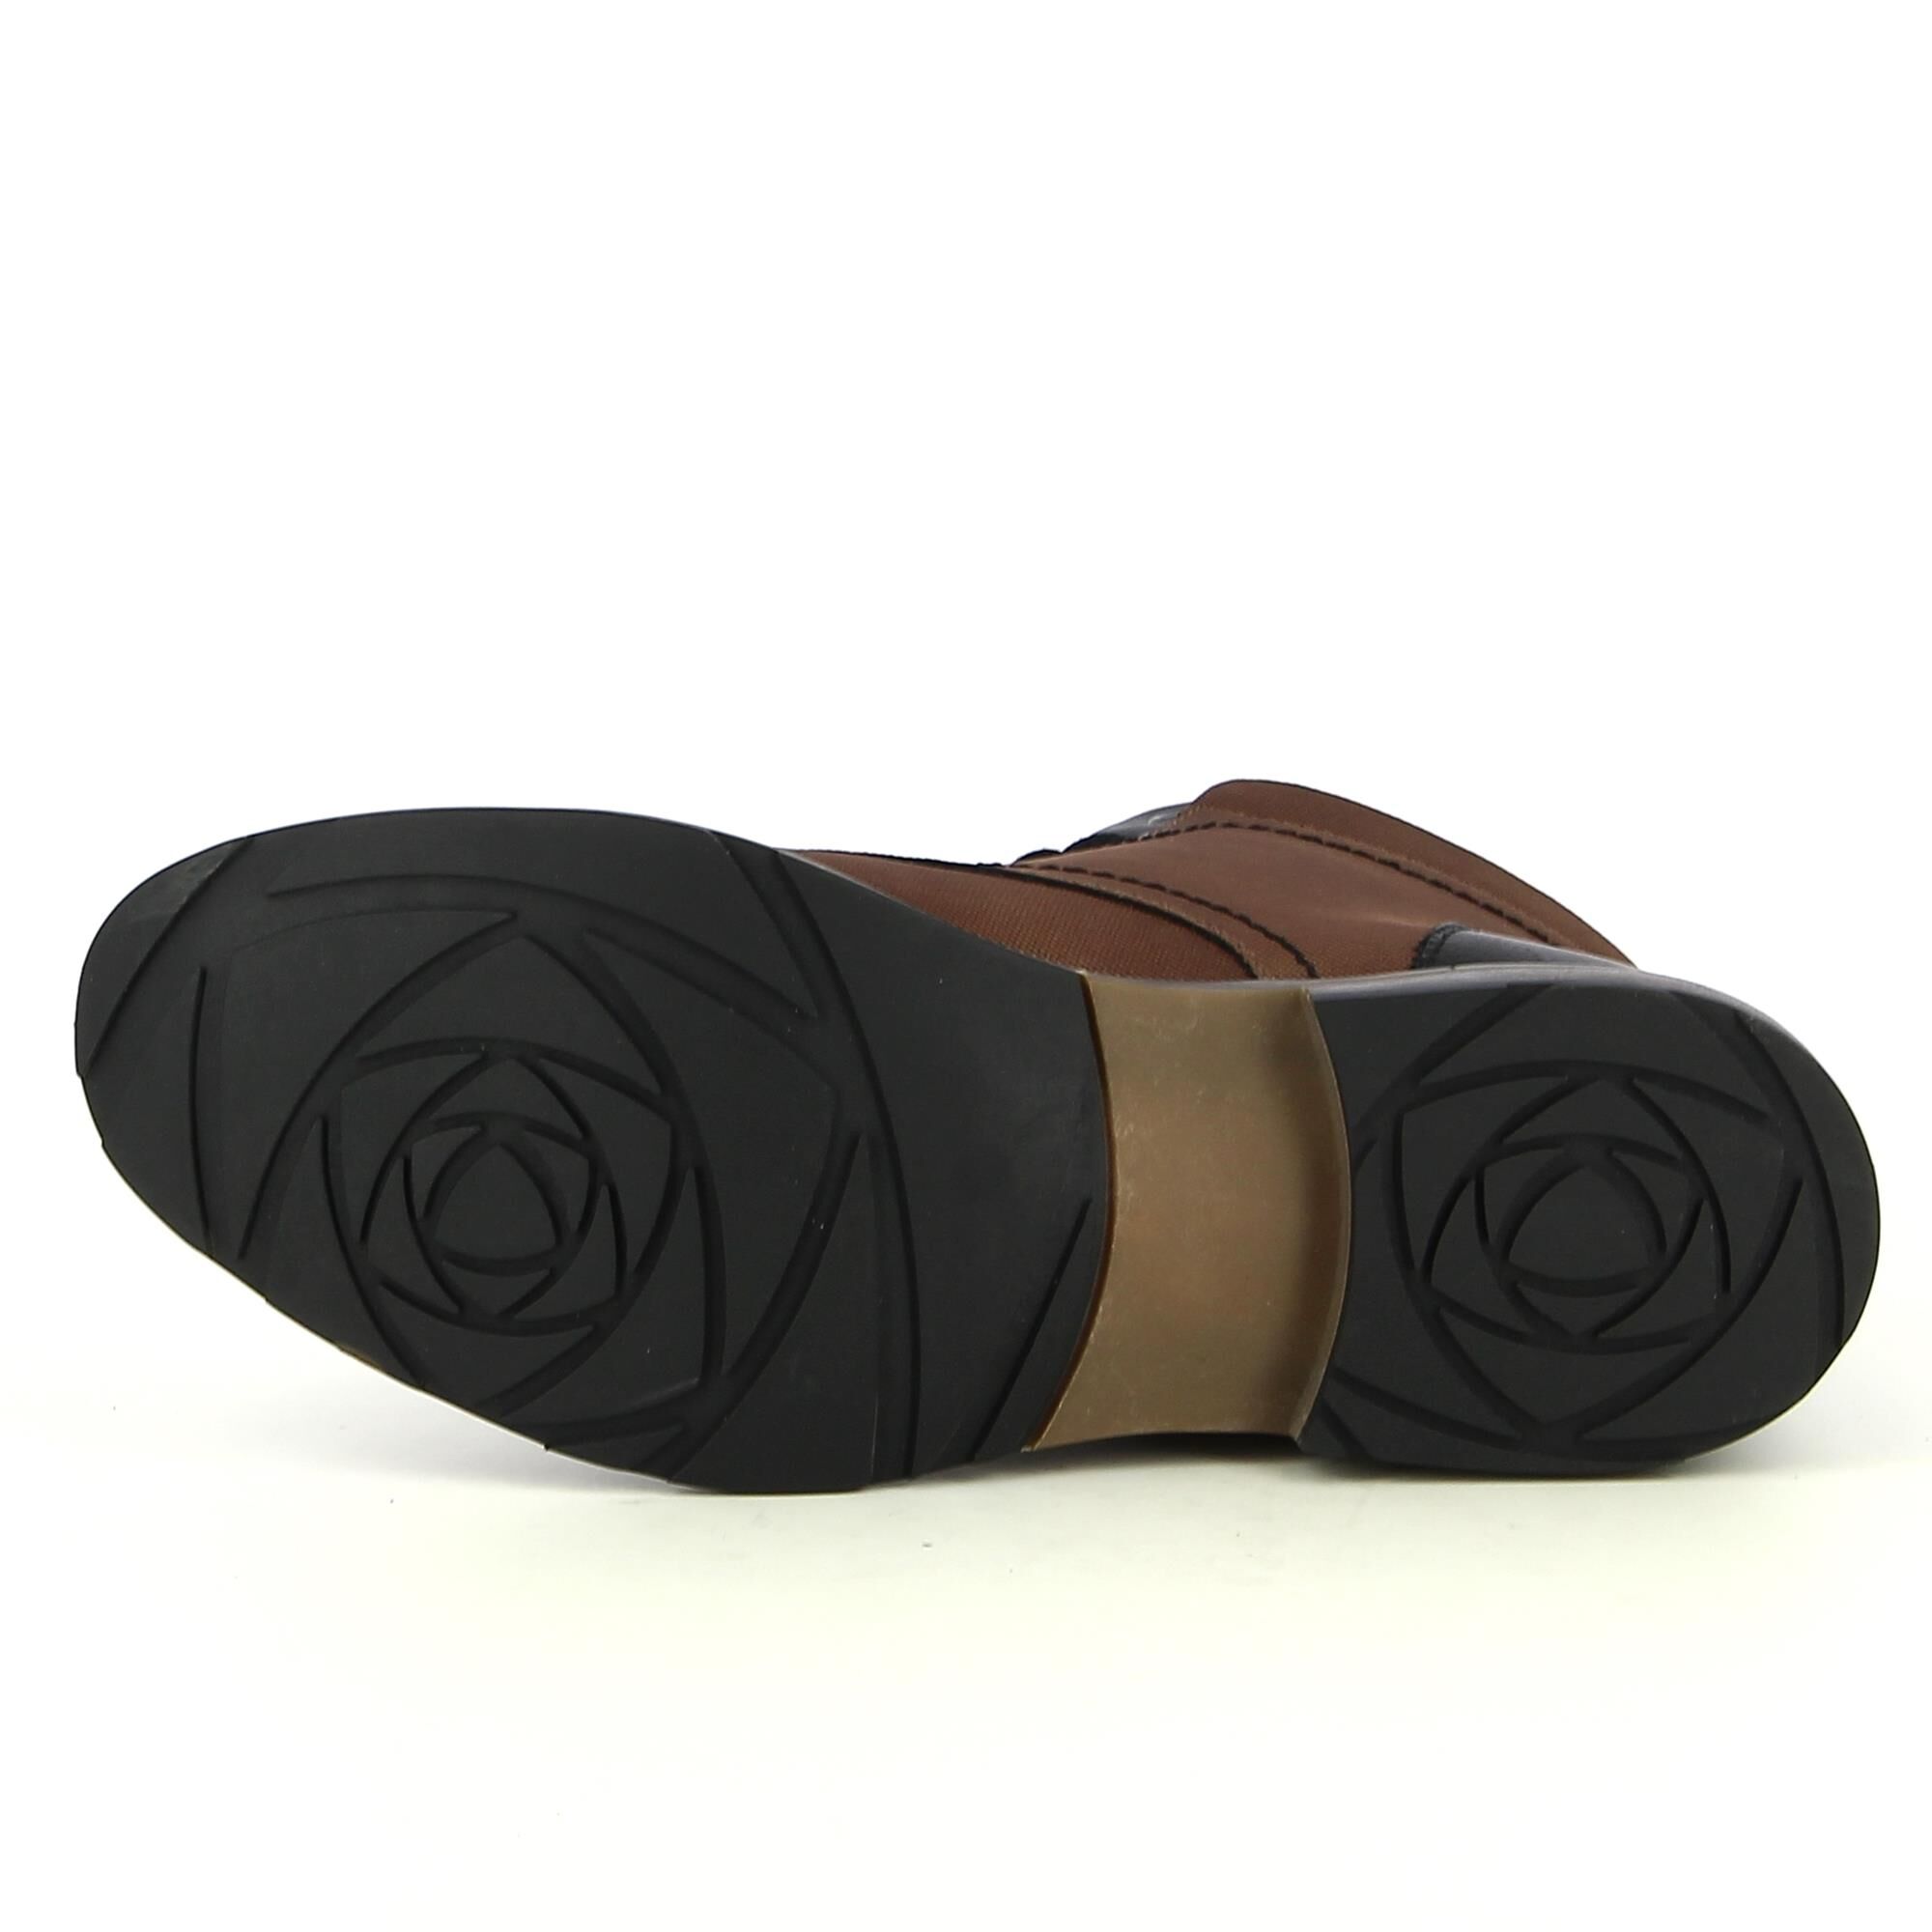 Ken Shoe Fashion - Marron - Chaussures A Lacets